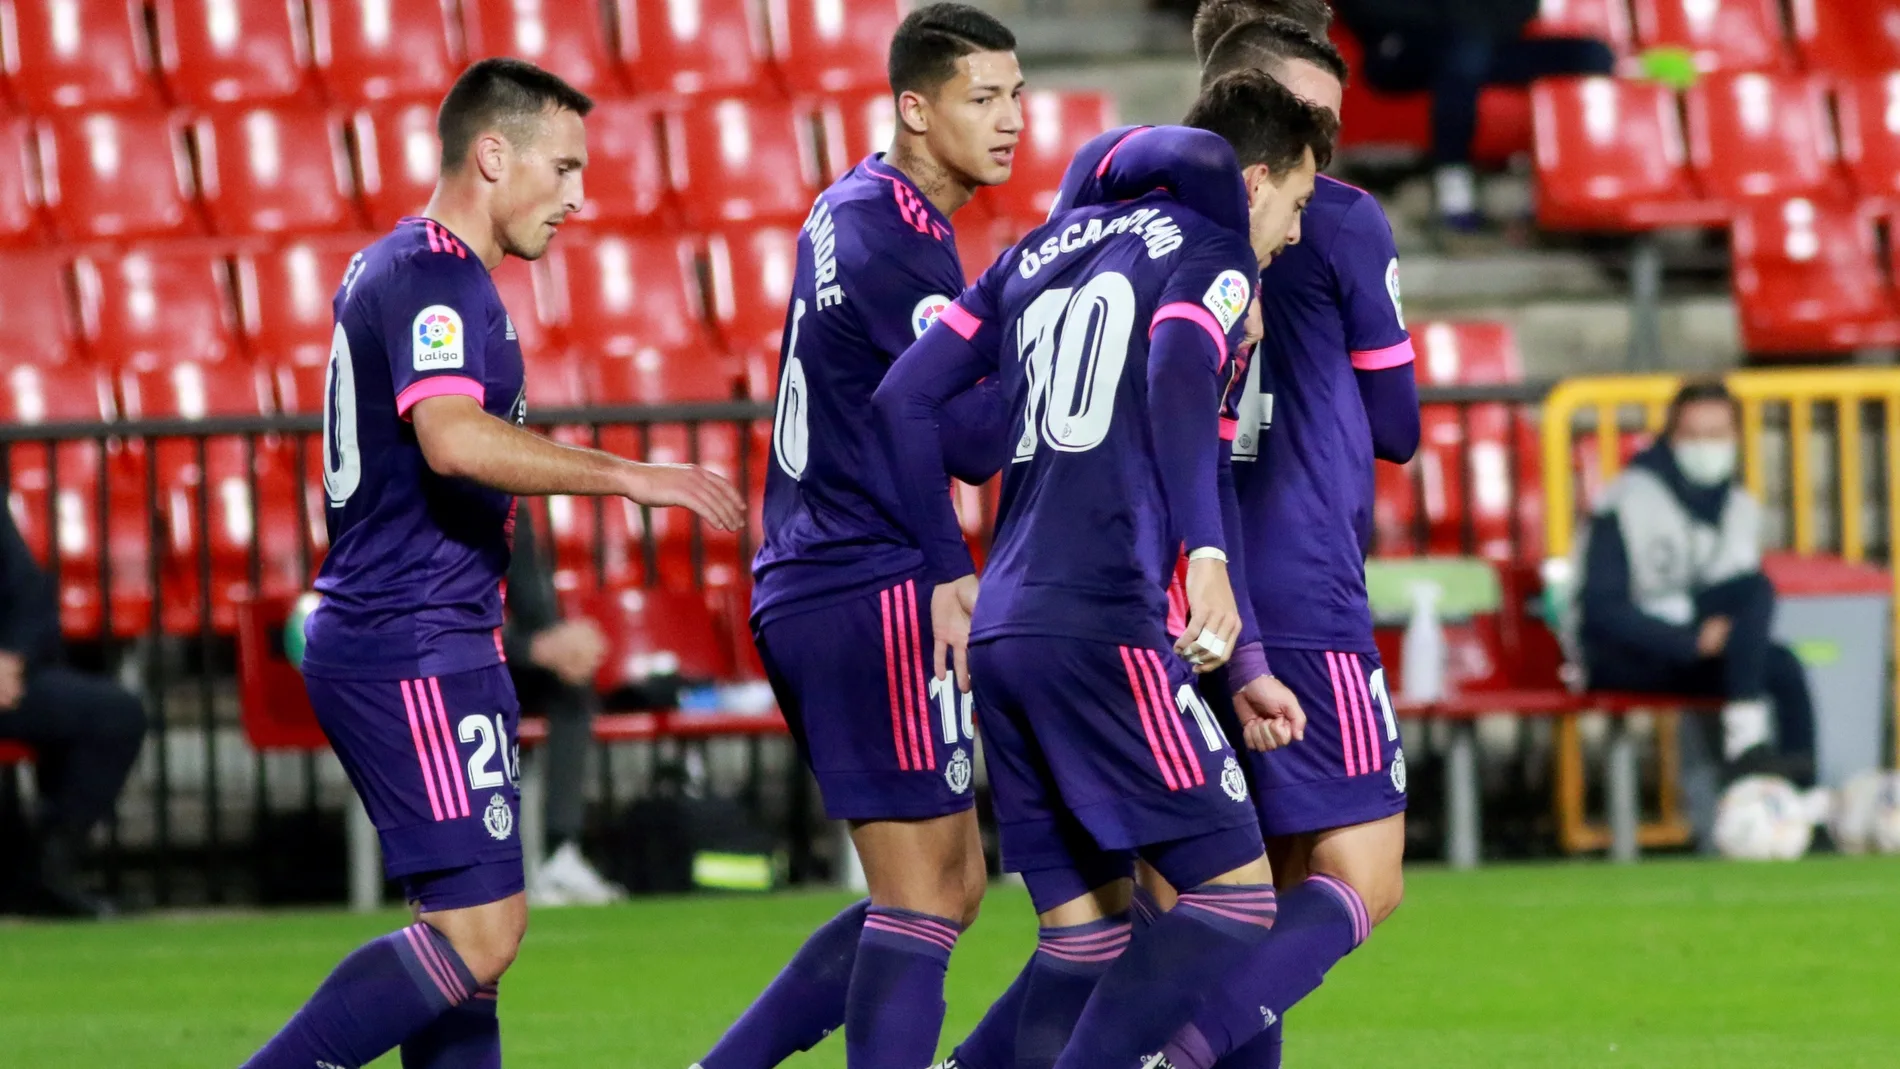 El centrocampista del Real Valladolid, Óscar Plano celebra con sus compañeros su gol ante el Granada, el primero del equipo, durante el encuentro correspondiente a la décima jornada de primera división disputado esta tarde en el estadio Nuevo Los Carmenes de Granada. EFE / Pepe Torres.